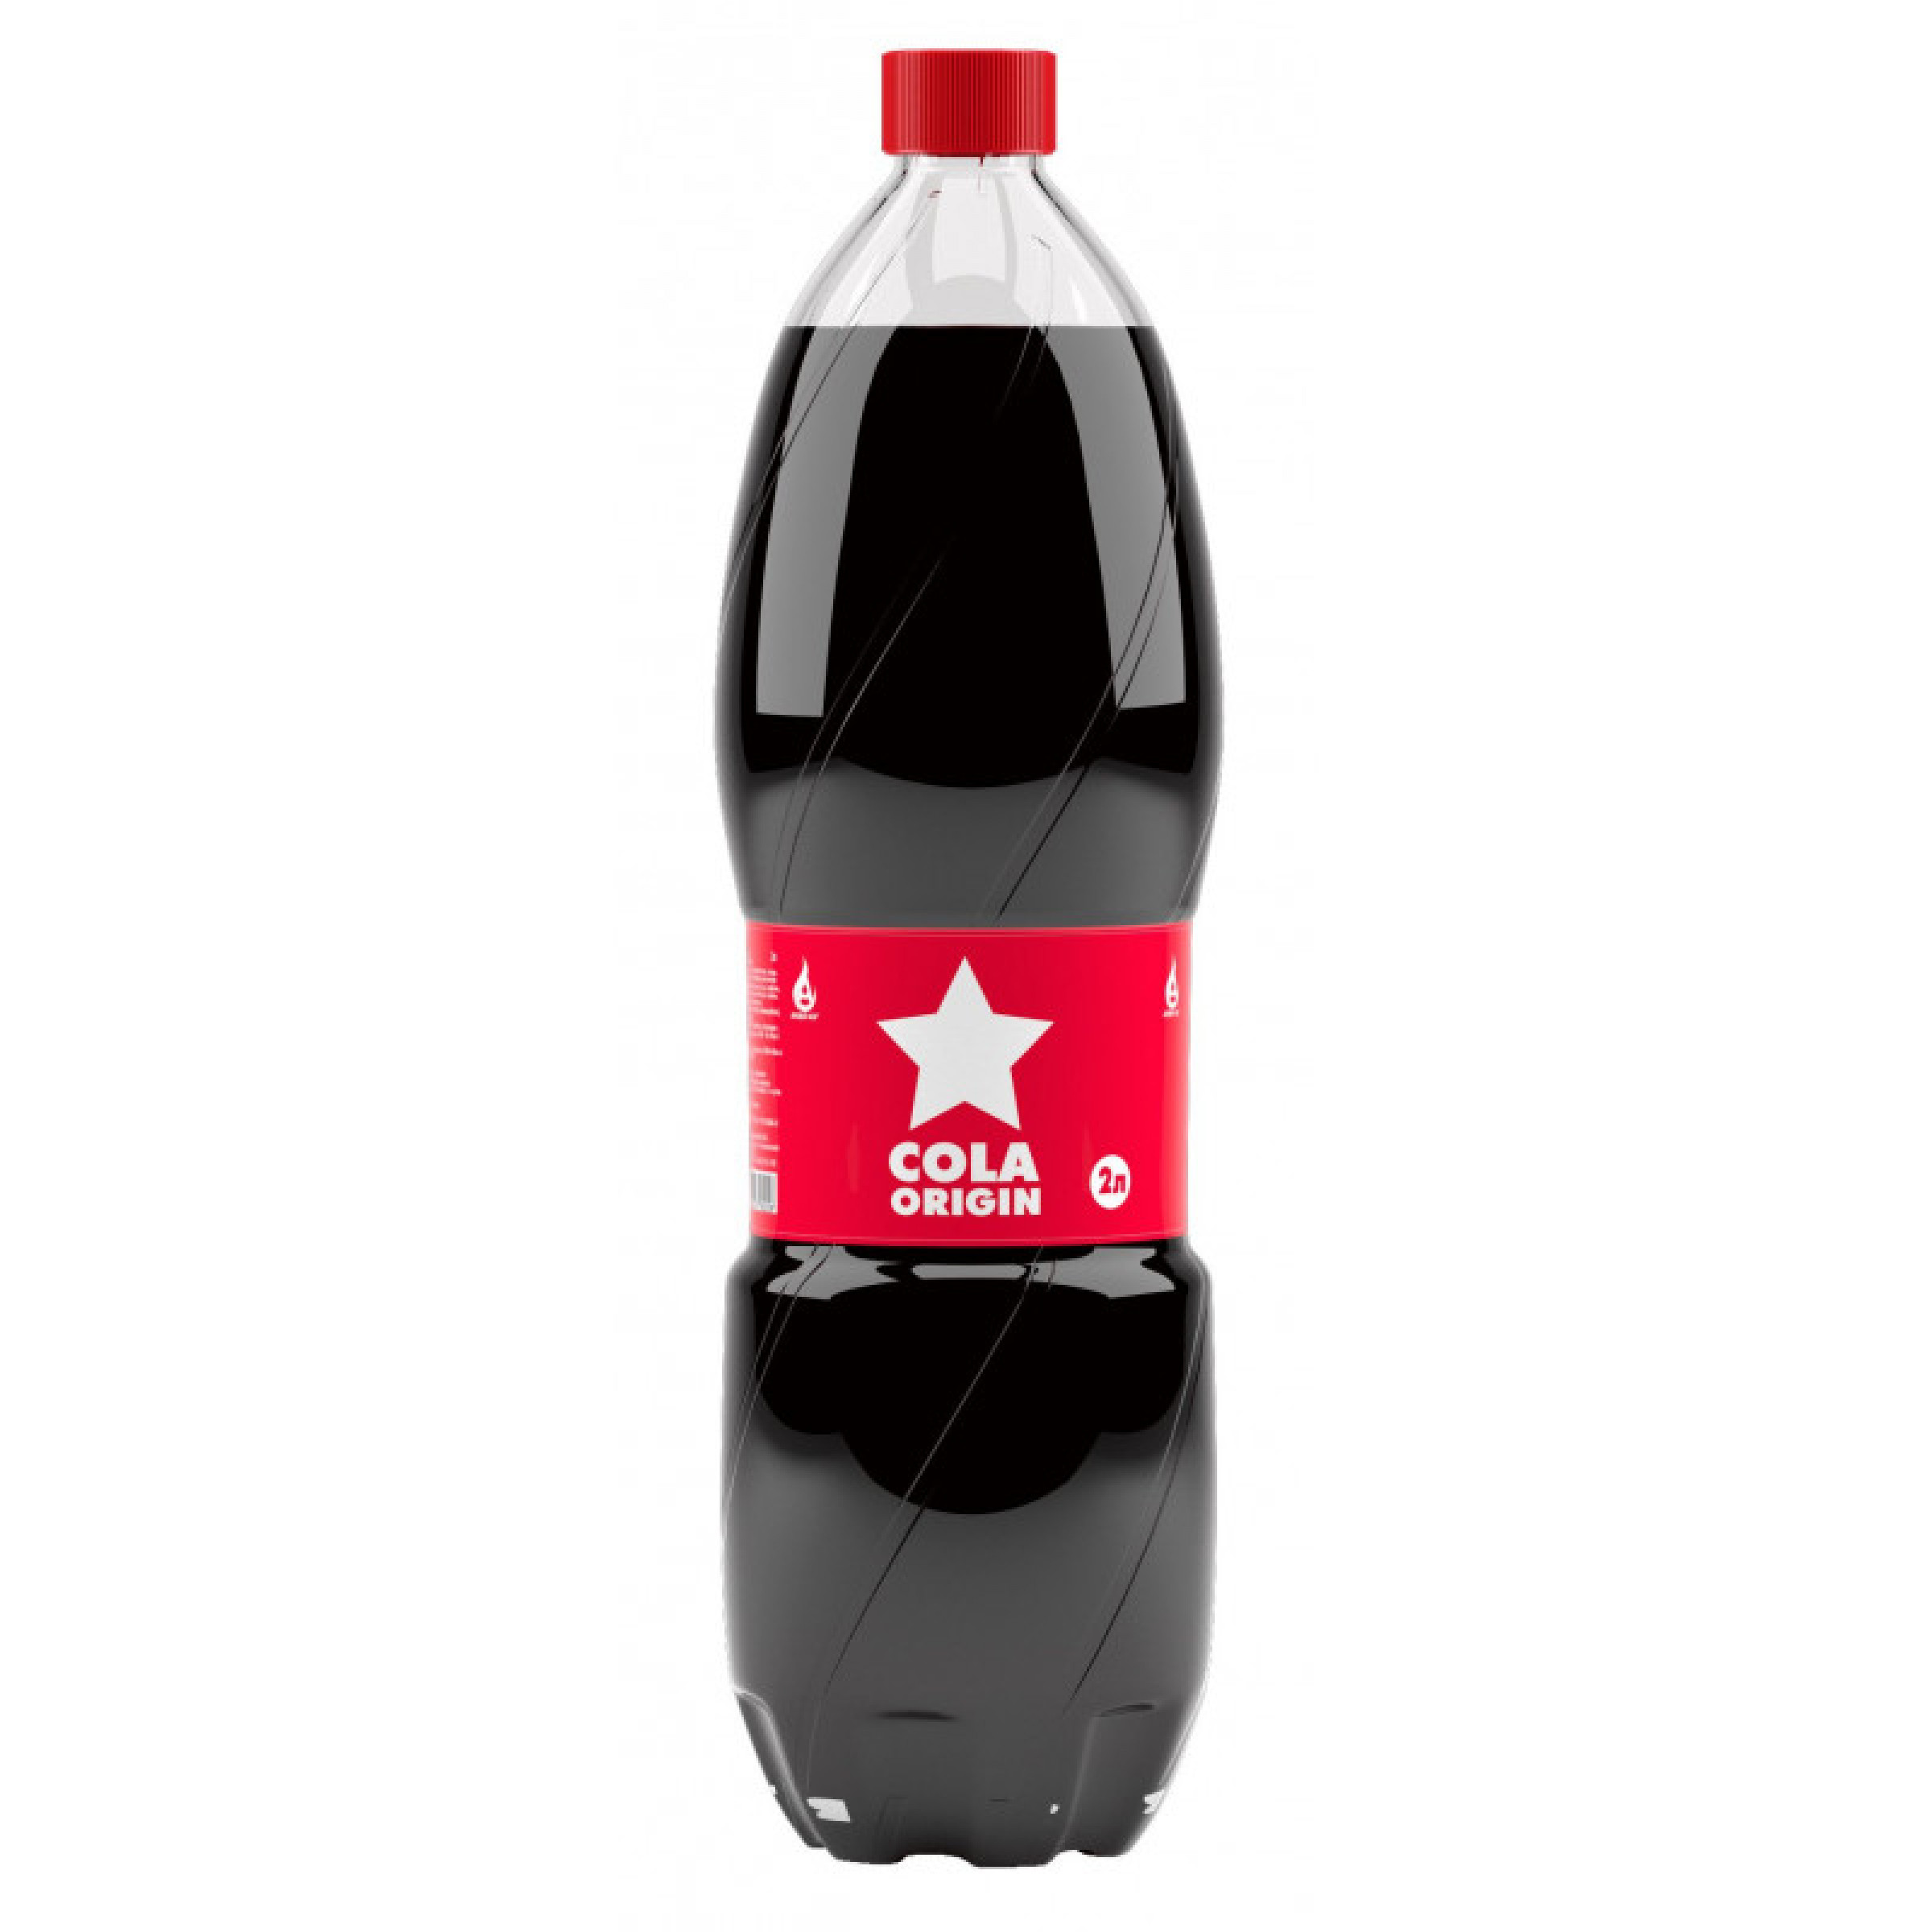 Сильногазированный напиток Cola Origin, 2 л